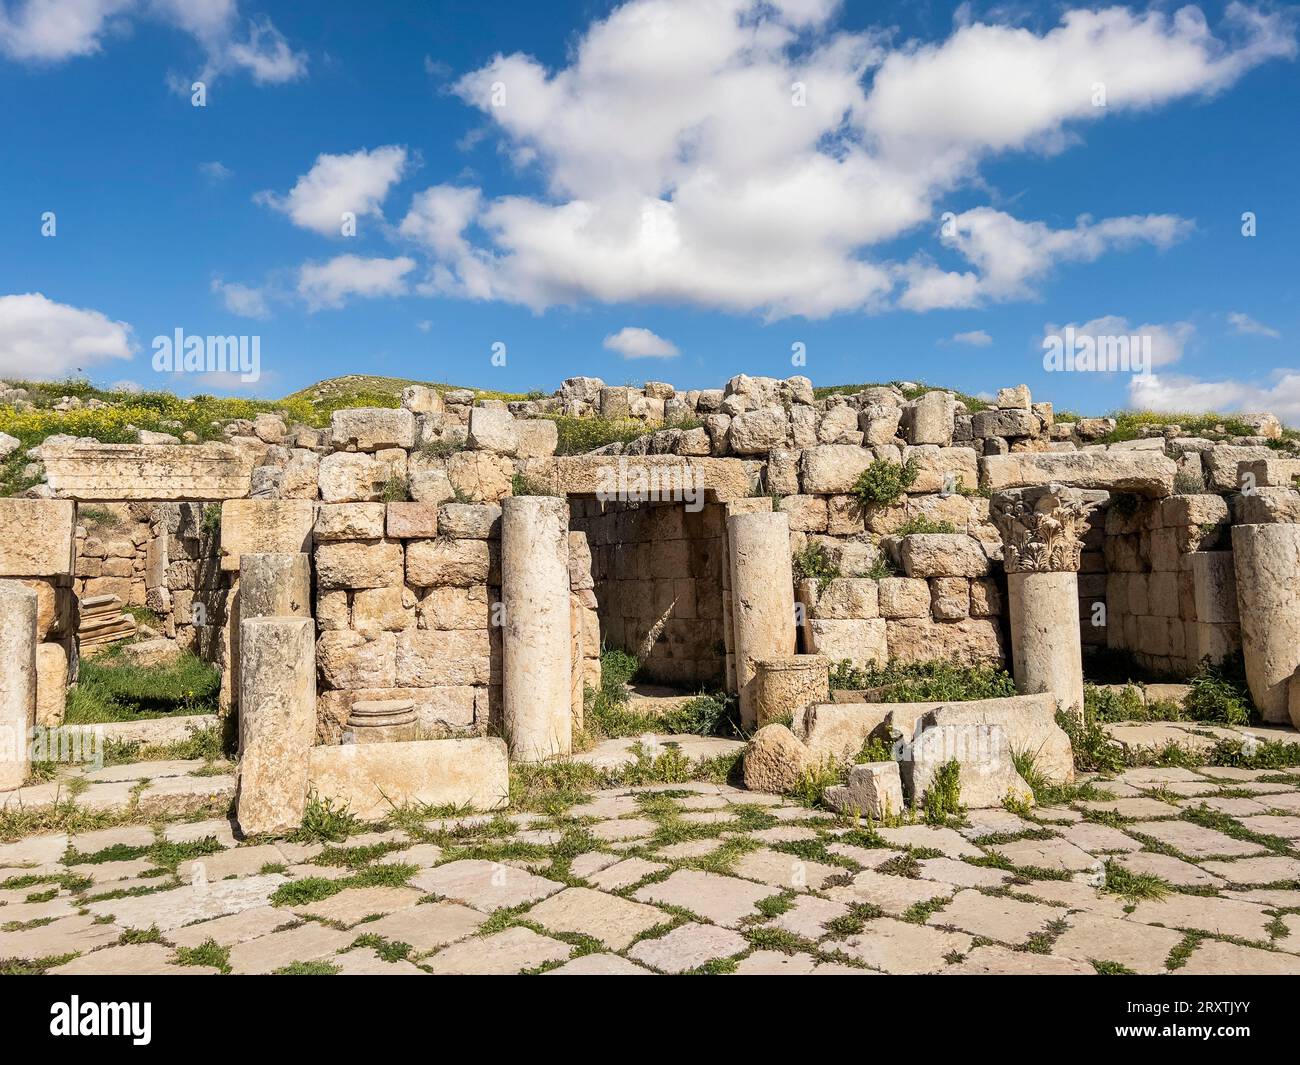 Colonne nell'antica città di Jerash, che si ritiene sia stata fondata nel 331 a.C. da Alessandro Magno, Jerash, Giordania, Medio Oriente Foto Stock